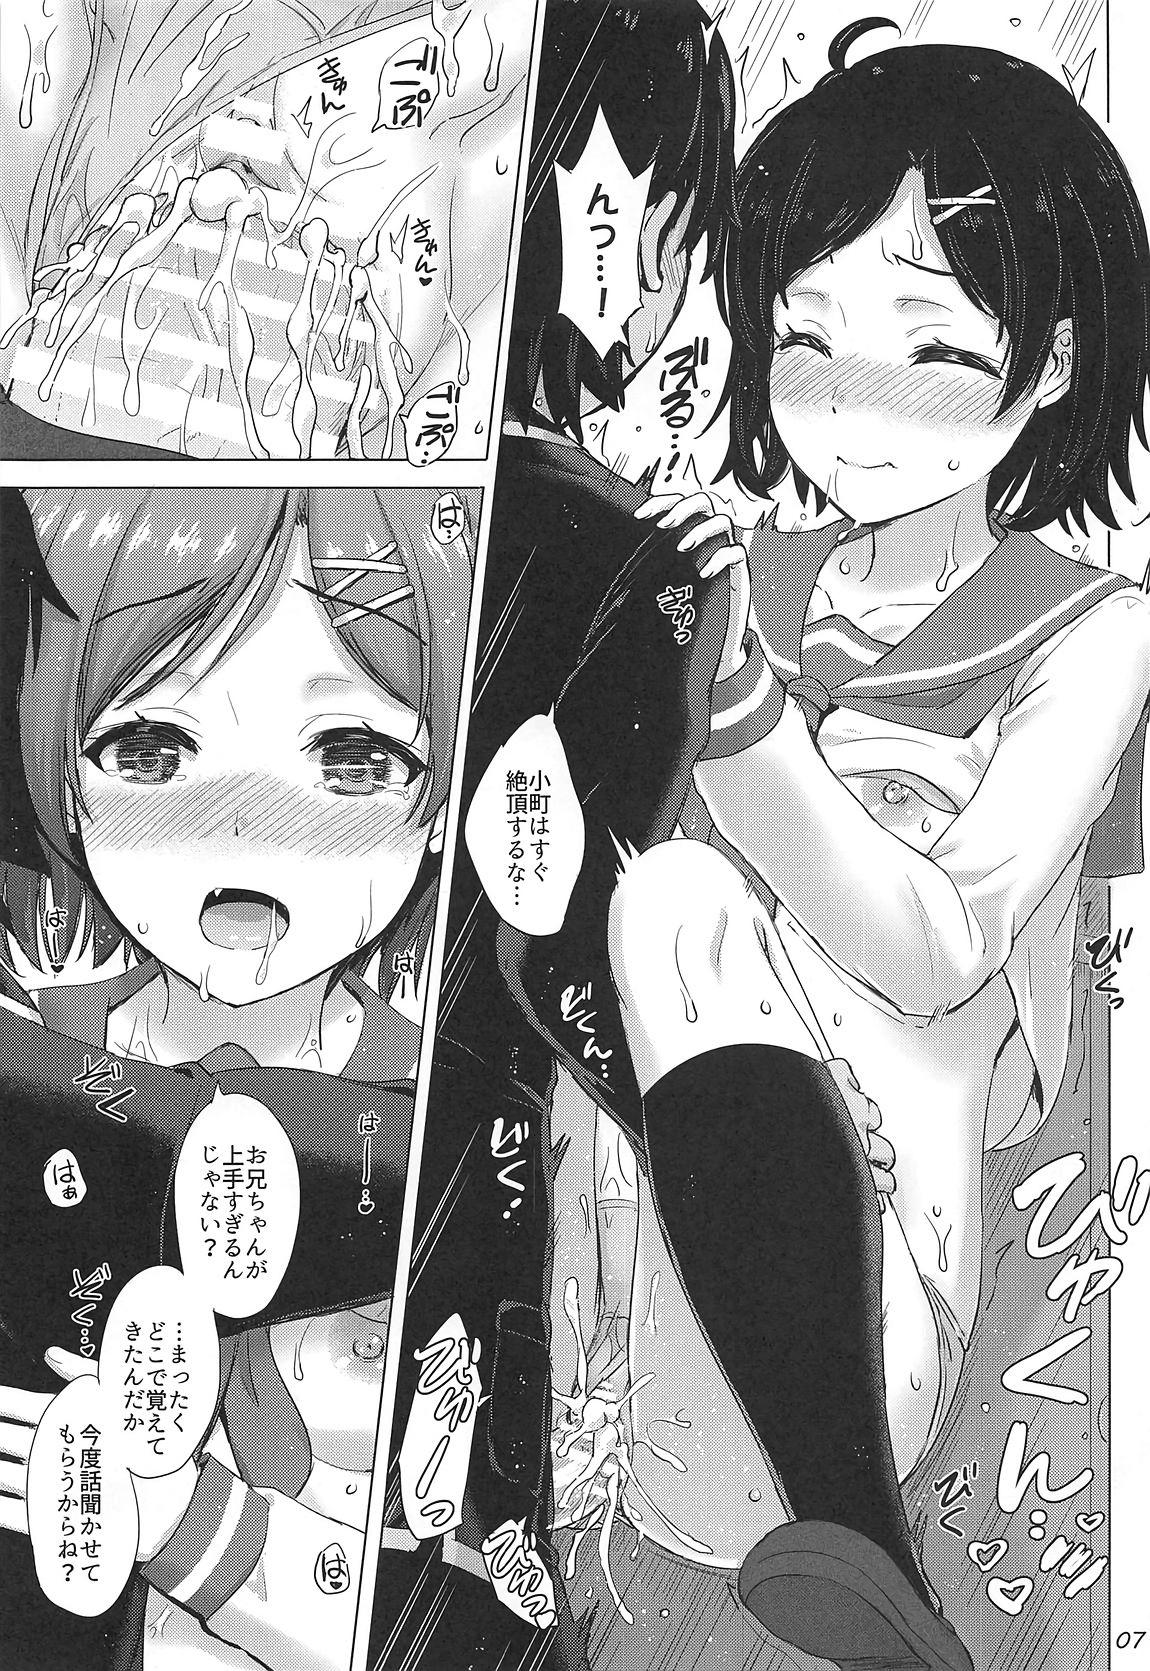 Little Aru Hi no Tadareta Onnanoko-tachi. - Yahari ore no seishun love come wa machigatteiru Perfect Girl Porn - Page 6